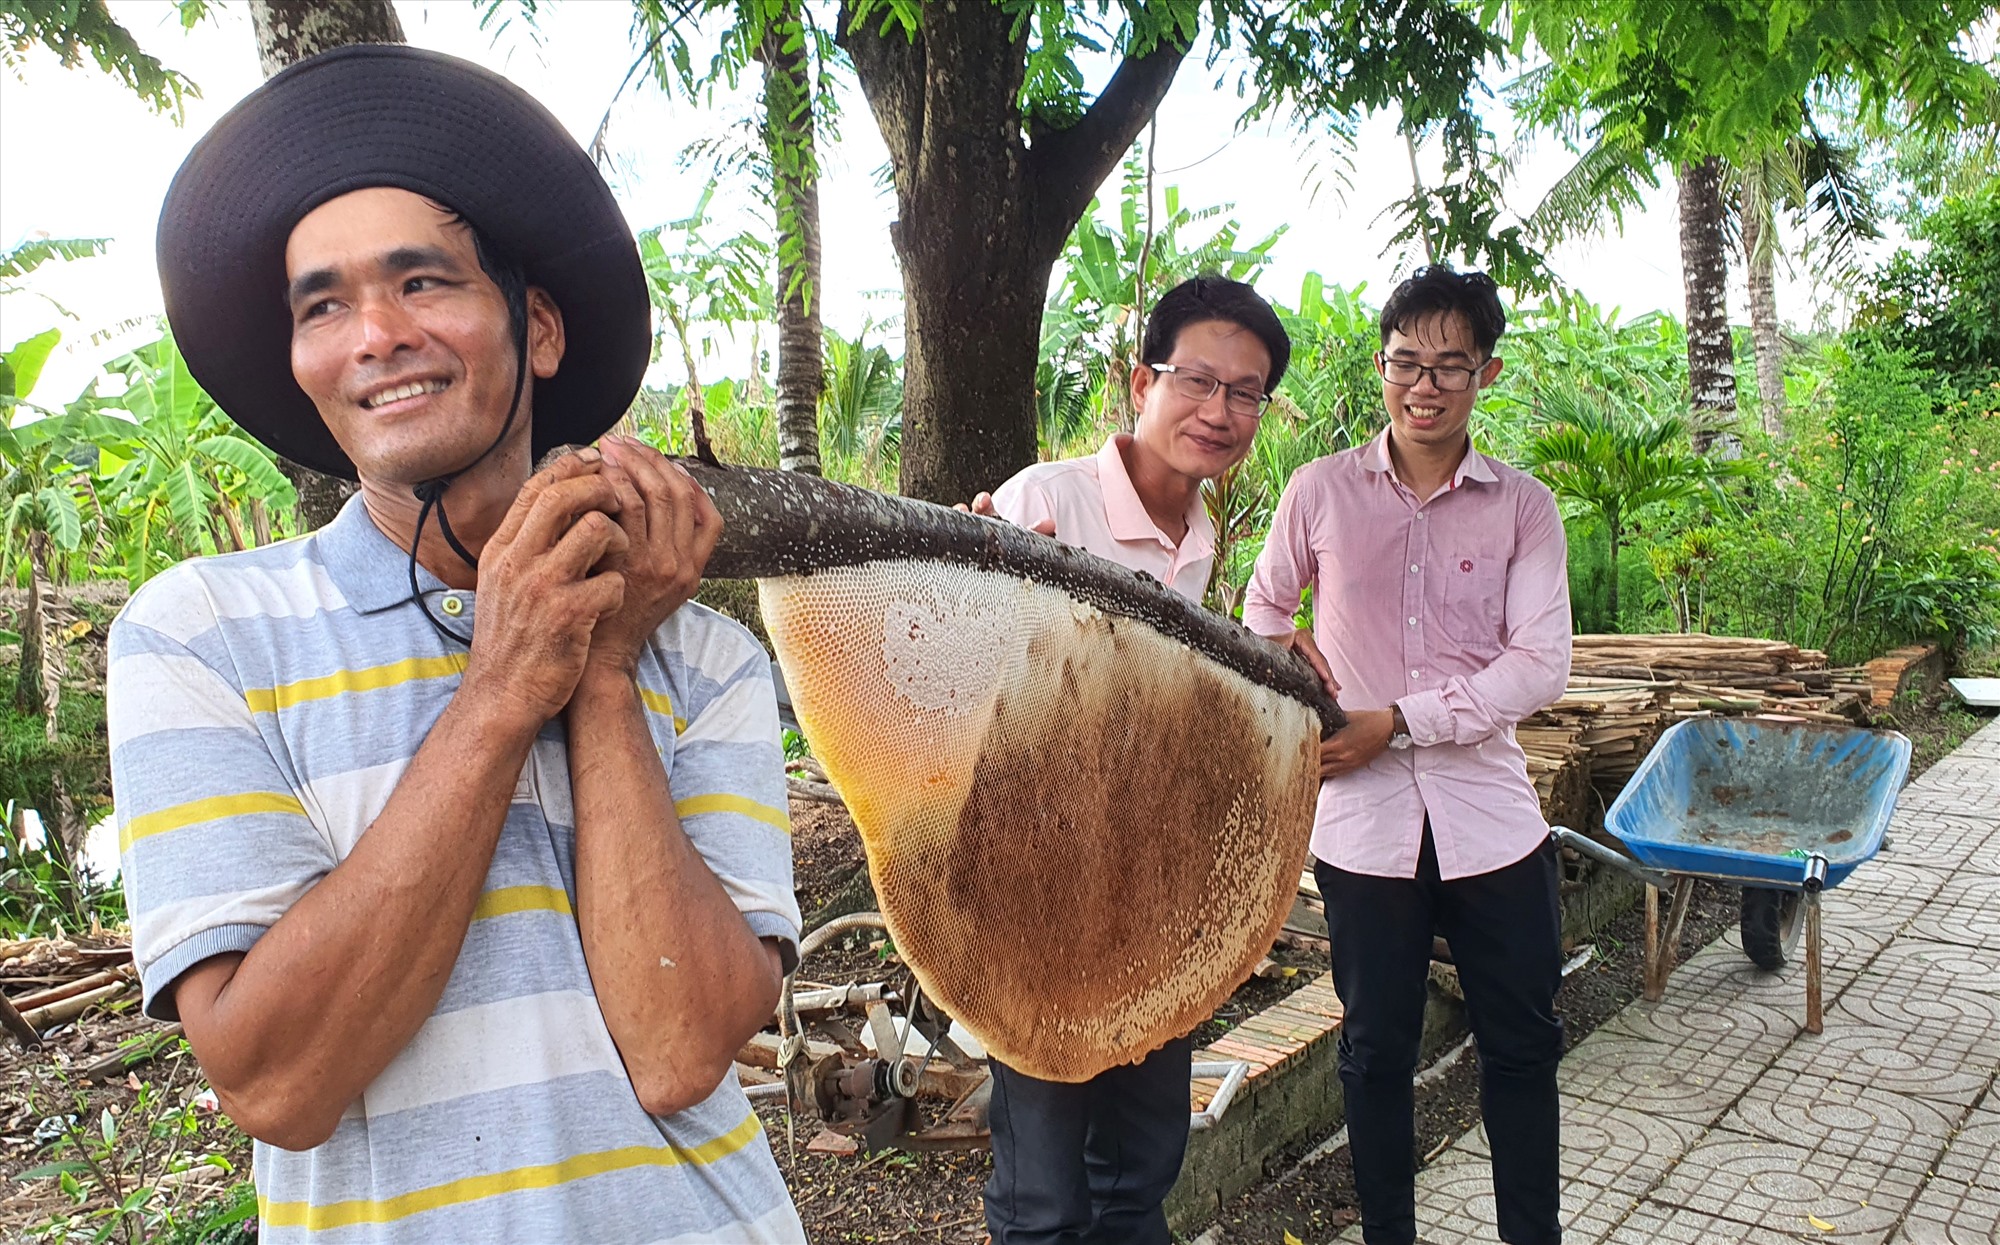 Du lịch sinh thái, vào rừng U Minh Hạ Cà Mau cùng ăn ong với chủ rừng hấp dẫn du khách. Ảnh: Nhật Hồ